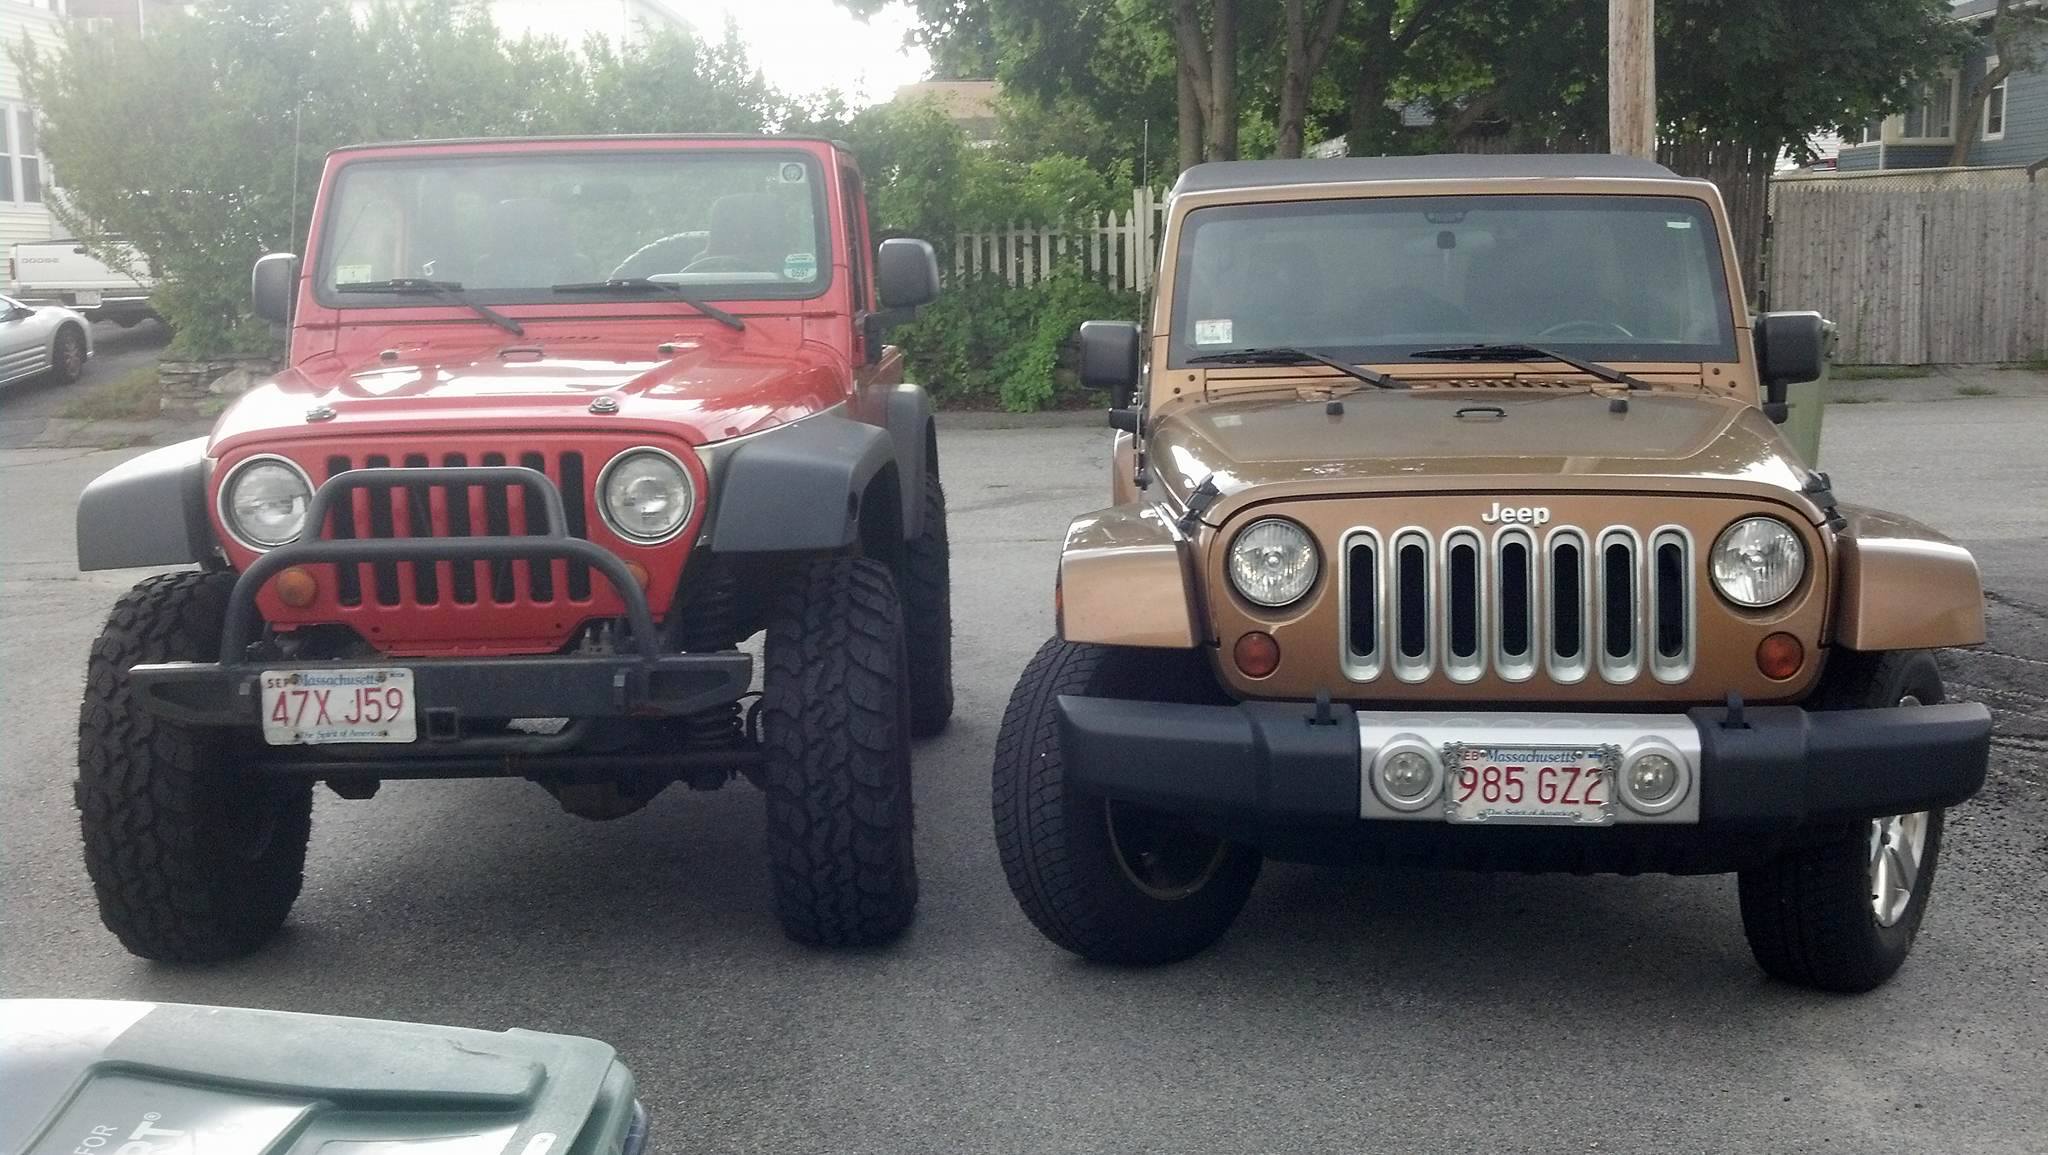 TJ vs JK Jeep Wrangler Differences